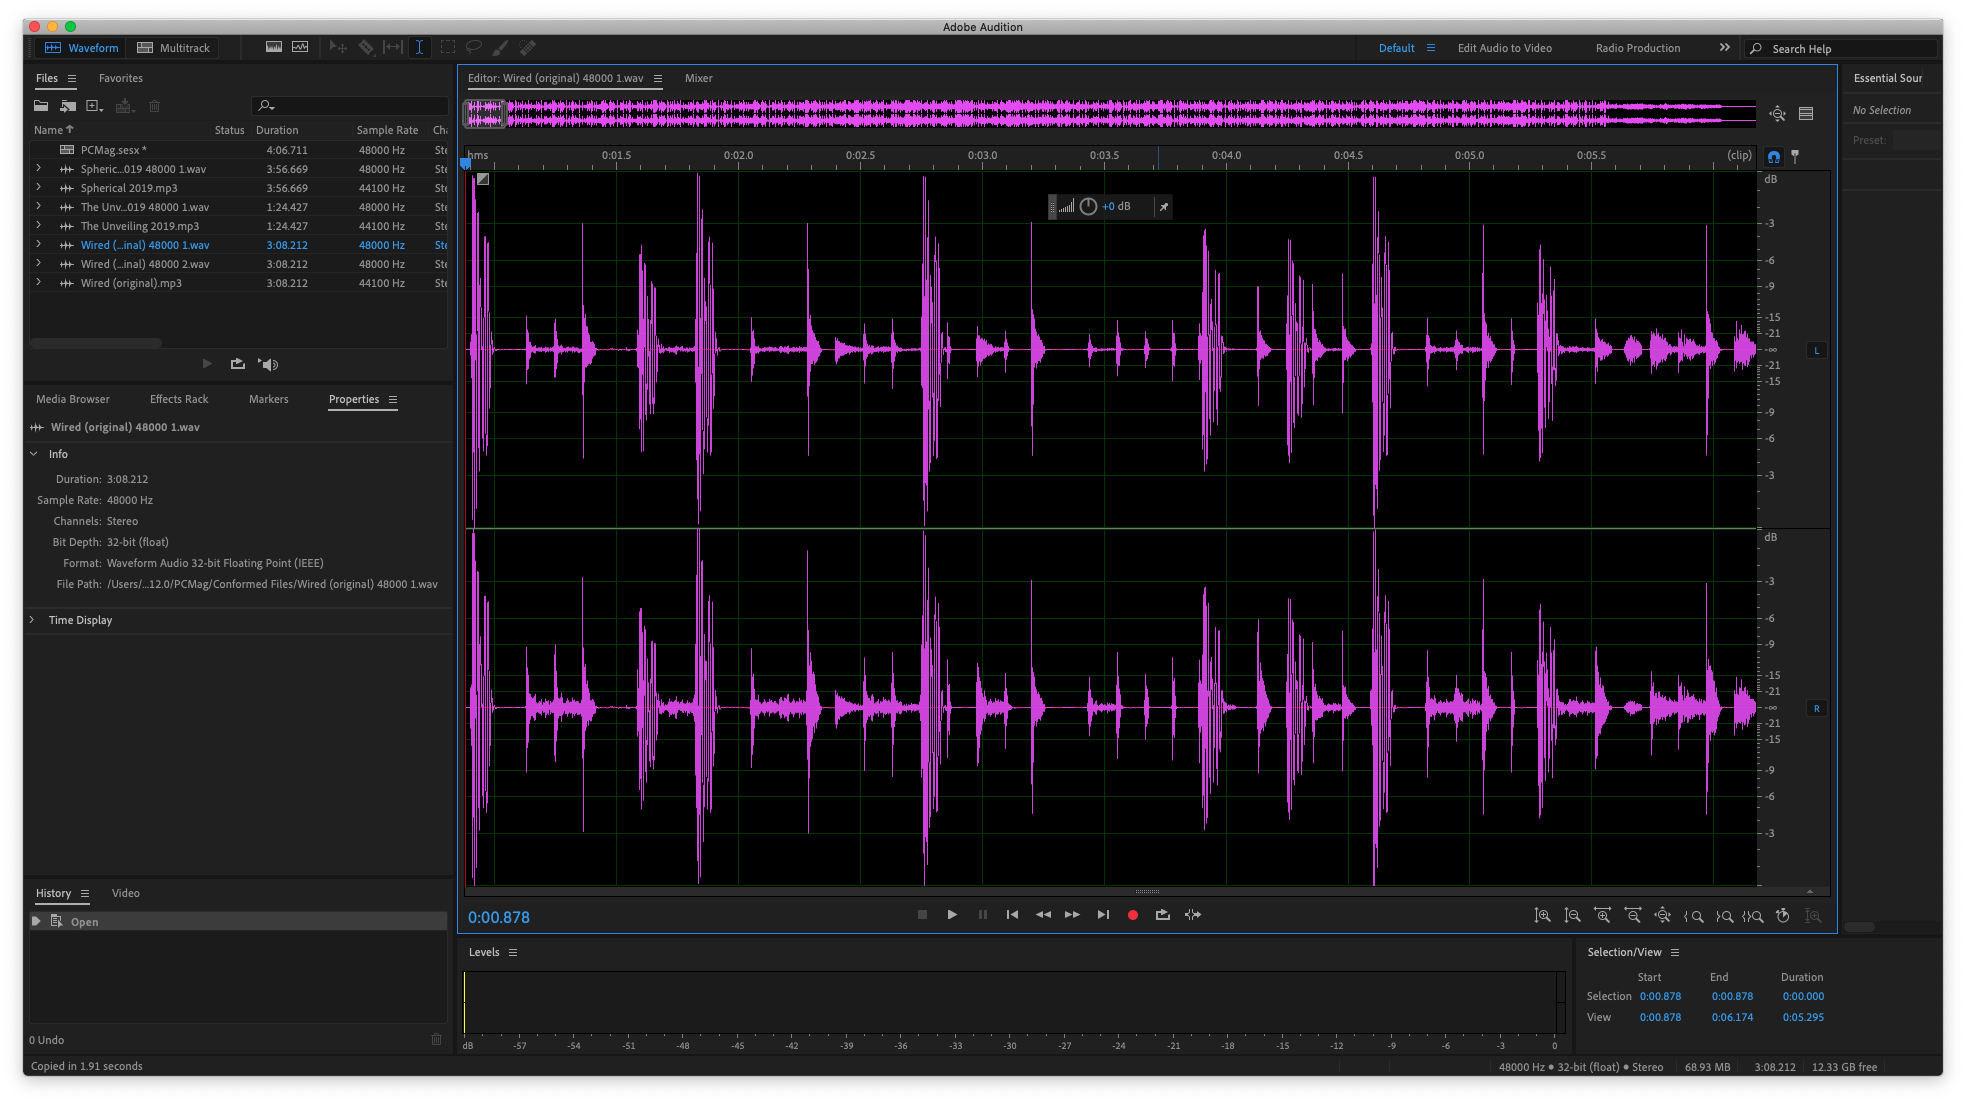 Adobe audition купить. Аудиоредактор Adobe Audition. Интерфейс программы адоб аудишн. Обработка звука в адоб аудишн. Приложение для обработки звука.